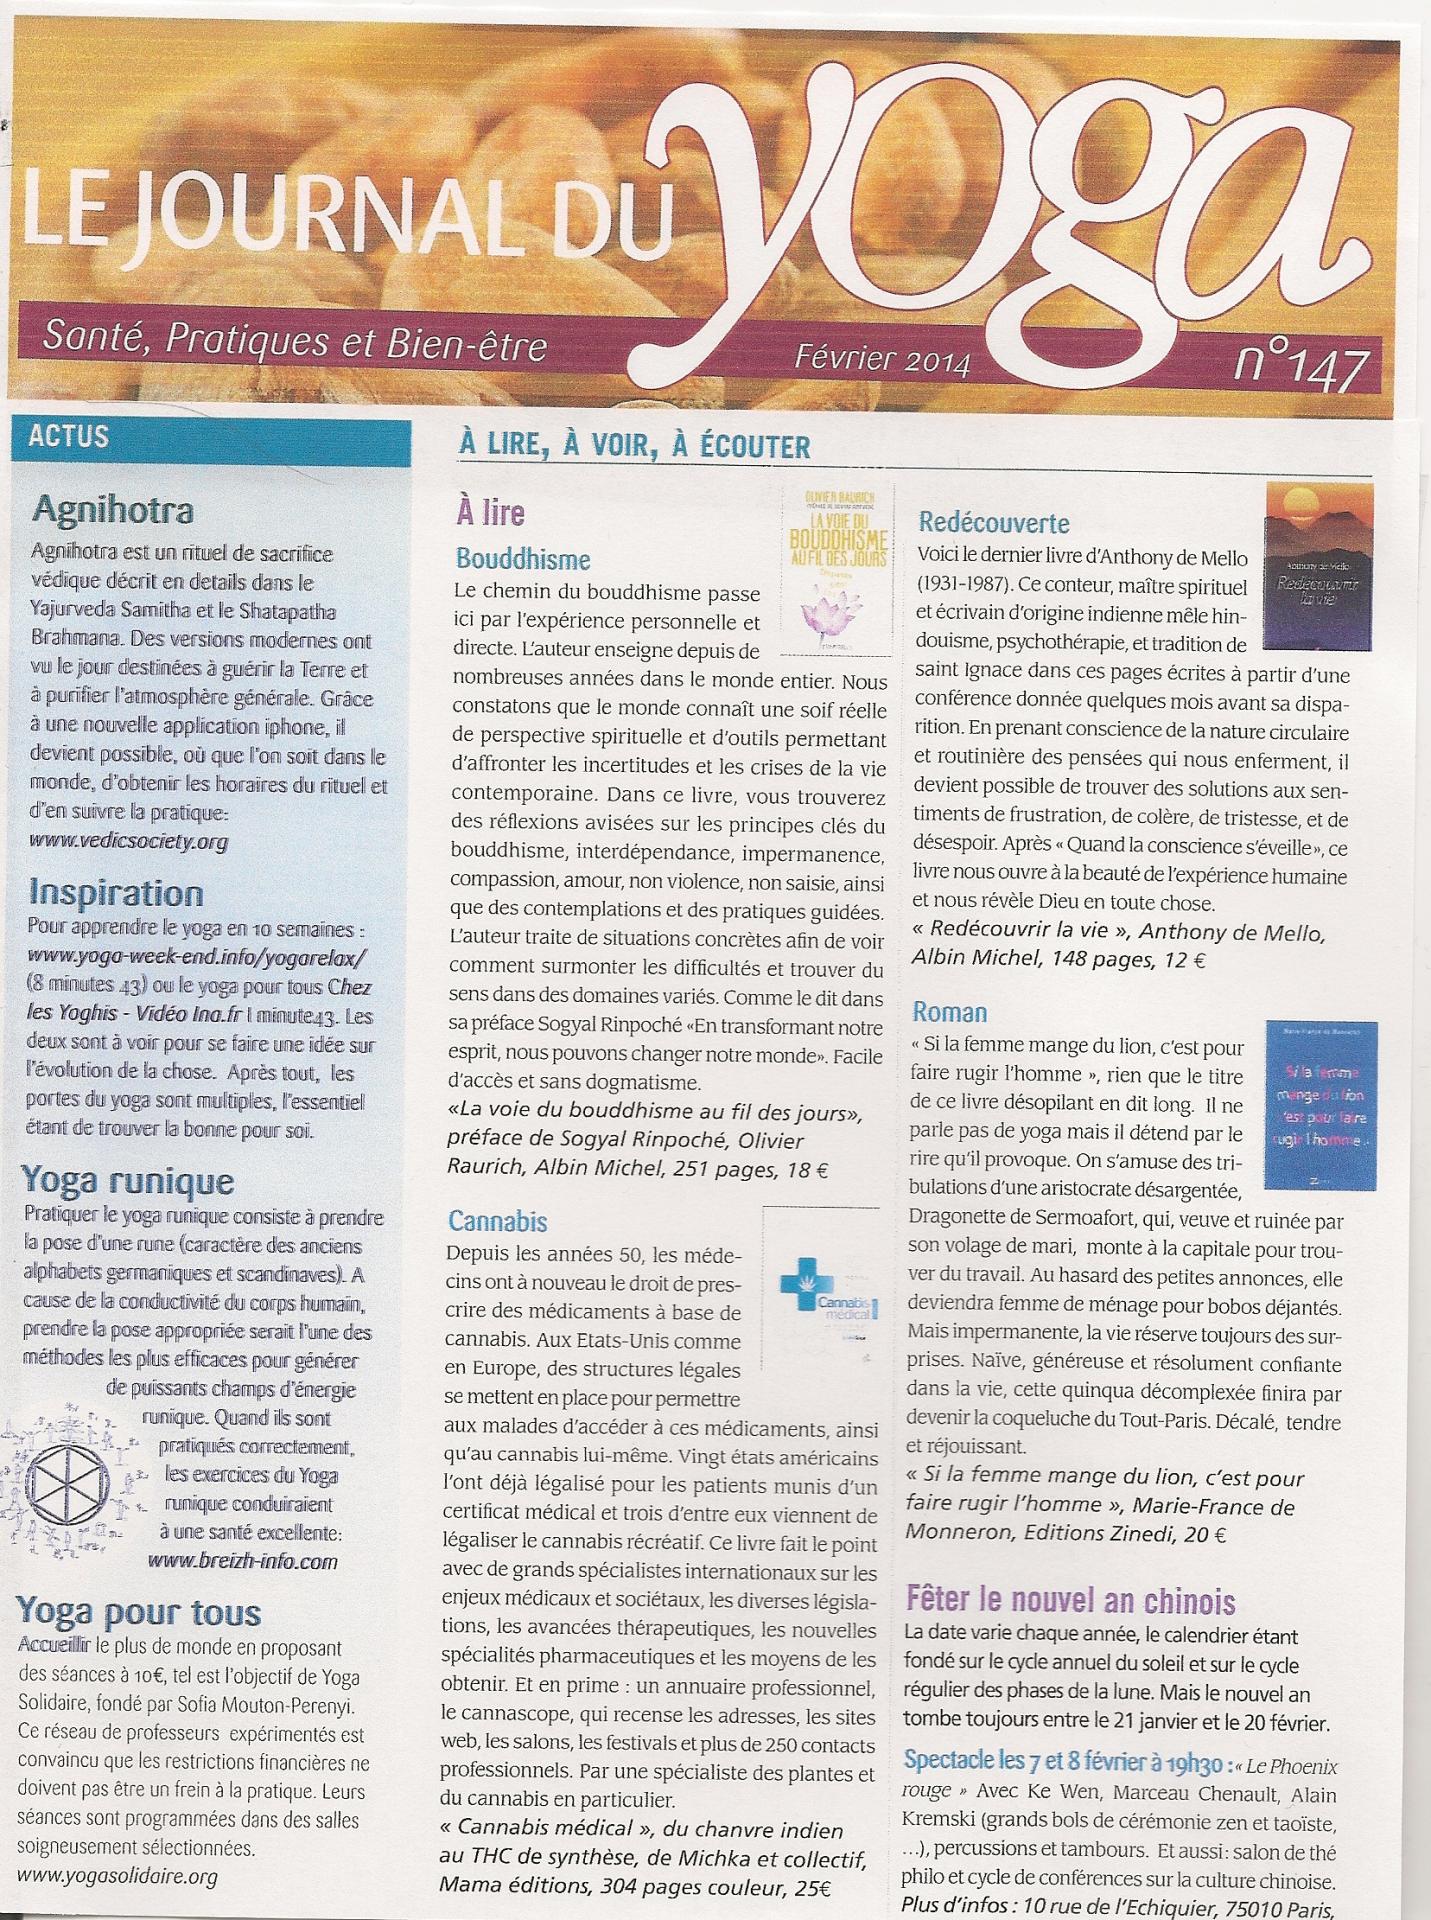 Le Journal du Yoga Février 2014